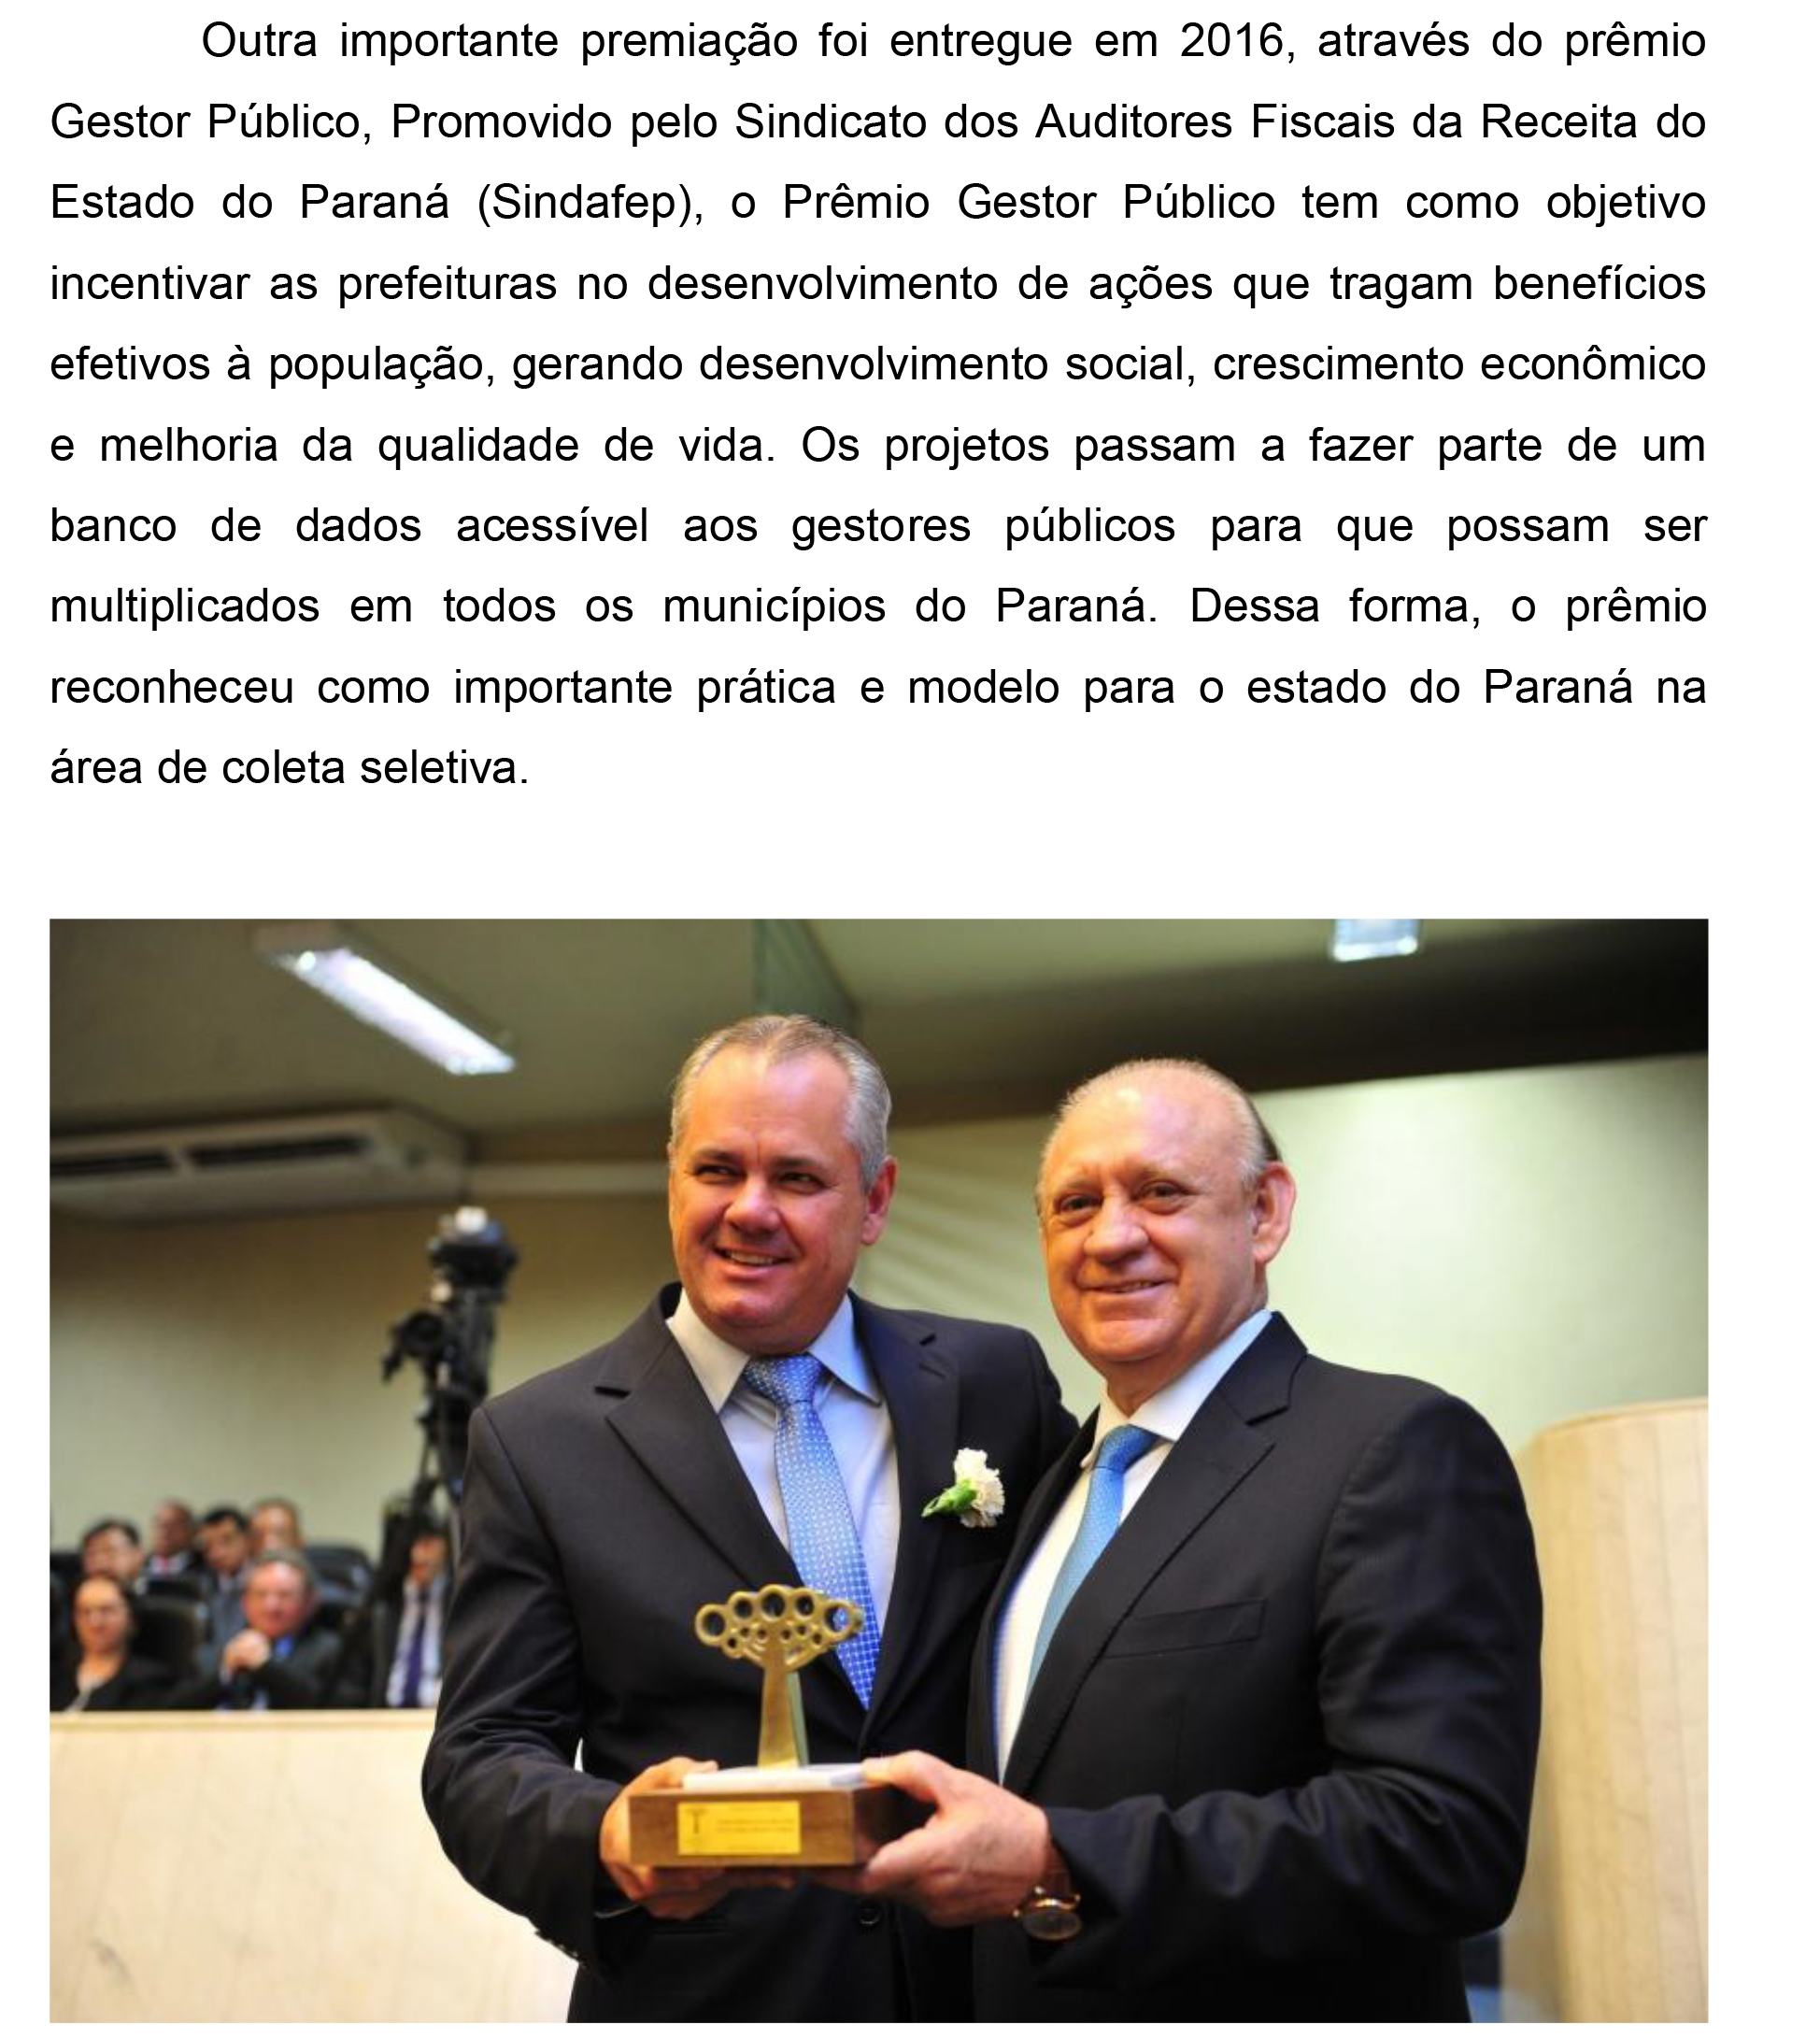 Premio Gestor Publico 2016.jpg